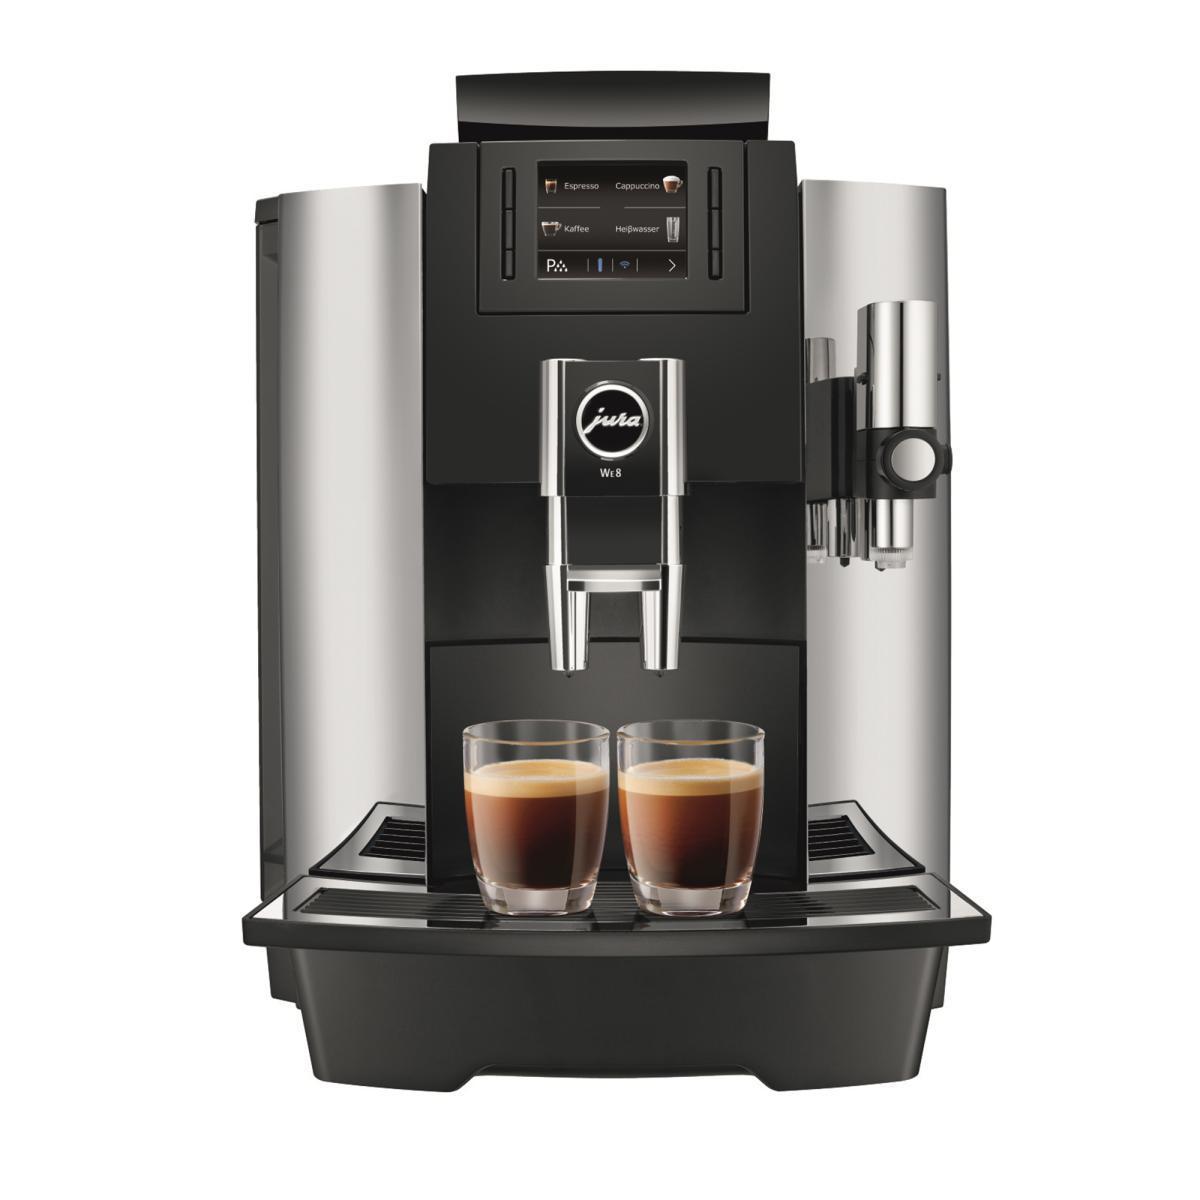 ユーラ 全自動コーヒーマシン WE8 家庭用コーヒーメーカー